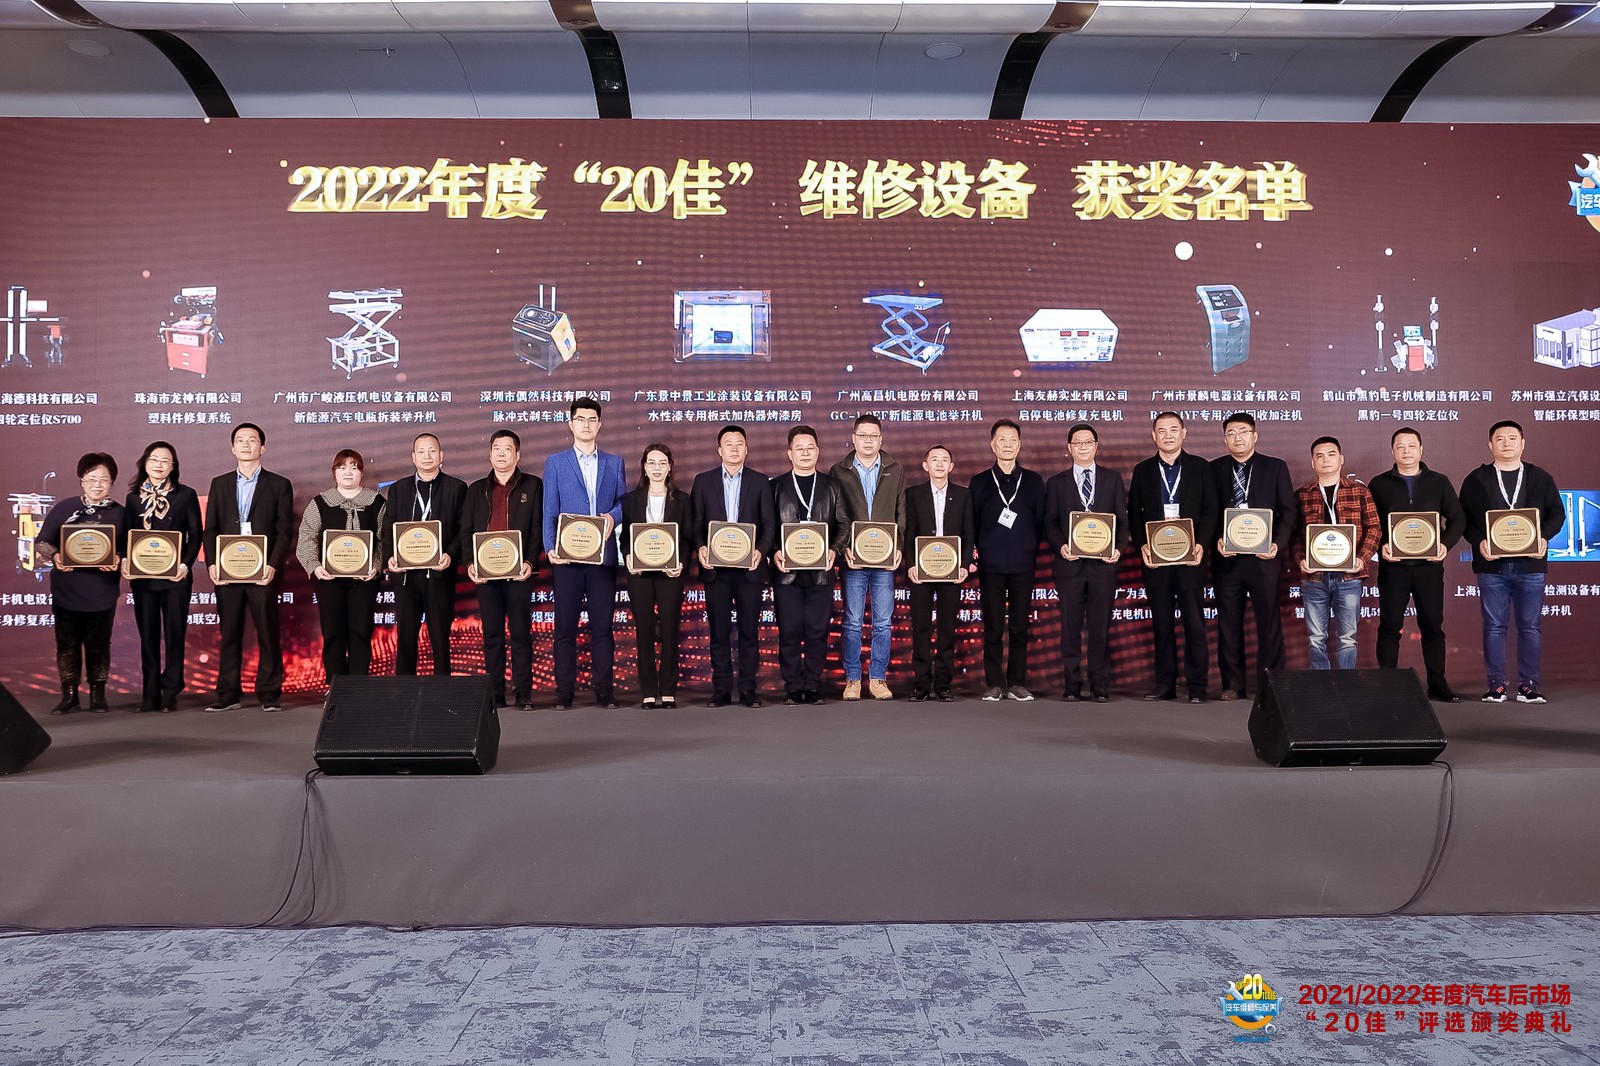 喜报！珠海龙神公司荣获2022年度“20佳”维修设备与网络人气奖殊荣！